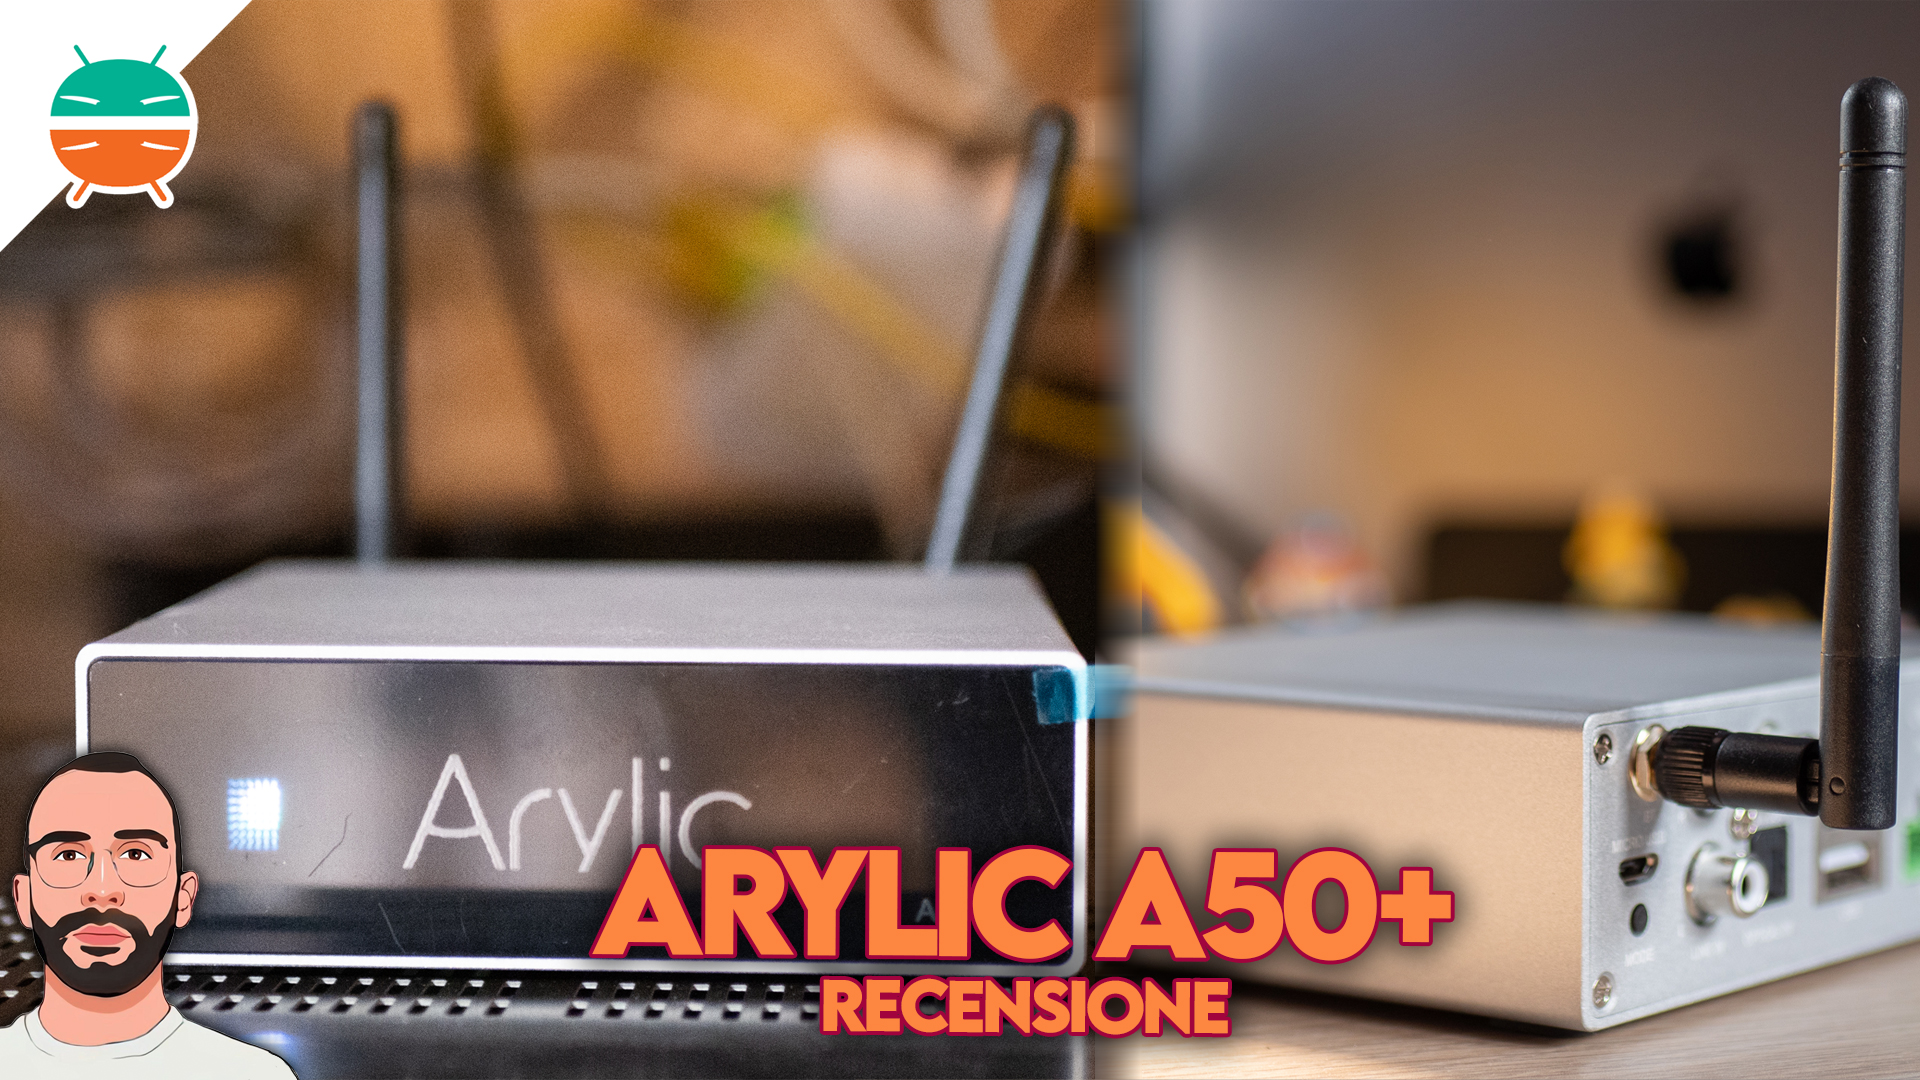 Perceptie Fantasierijk Weggooien Arylic A50+ review: de SMART versterker die je niet verwacht! - GizChina.it